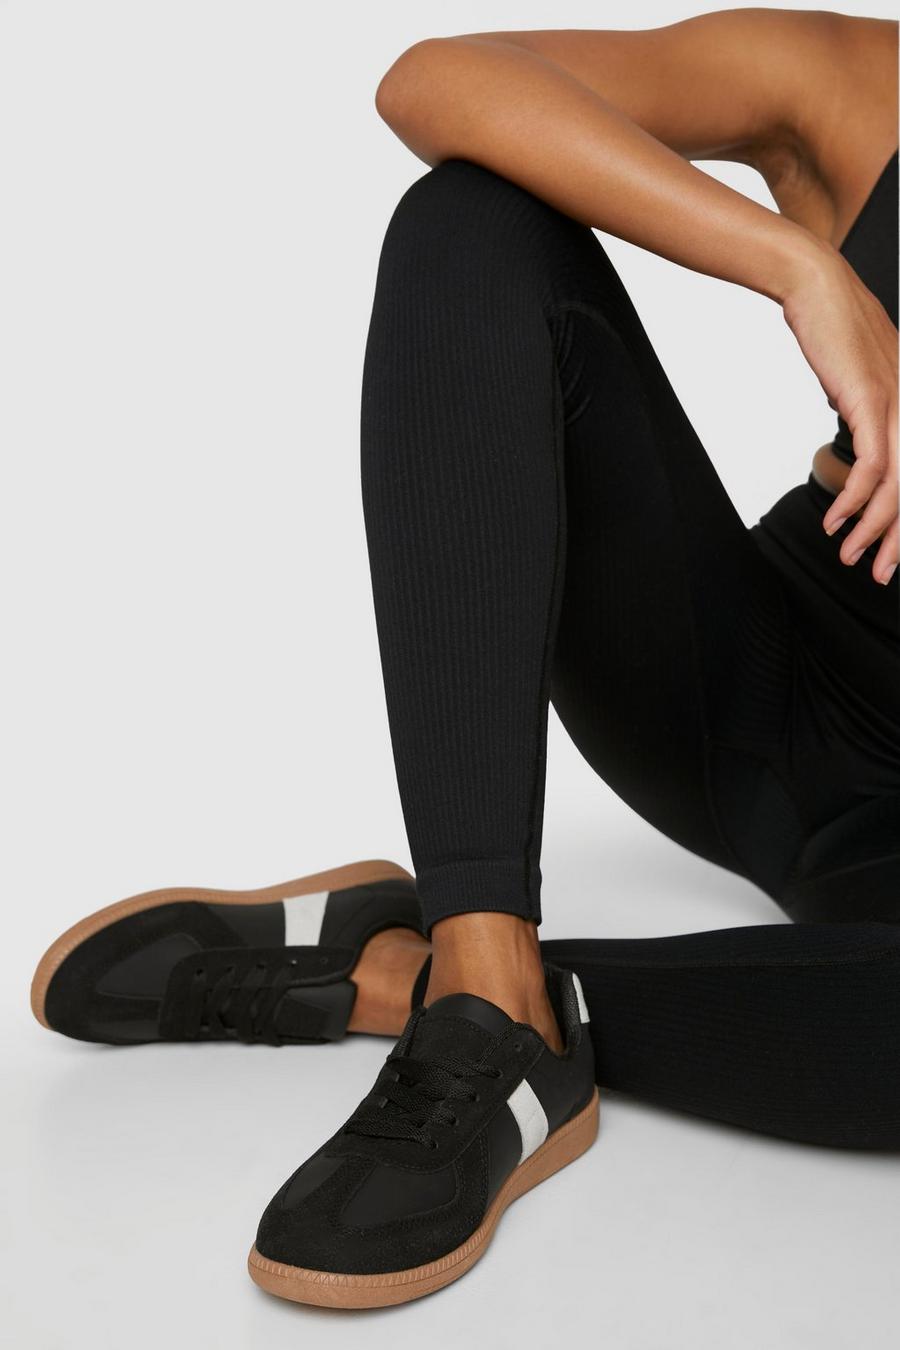 Zapatillas deportivas planas con panel en contraste, Black